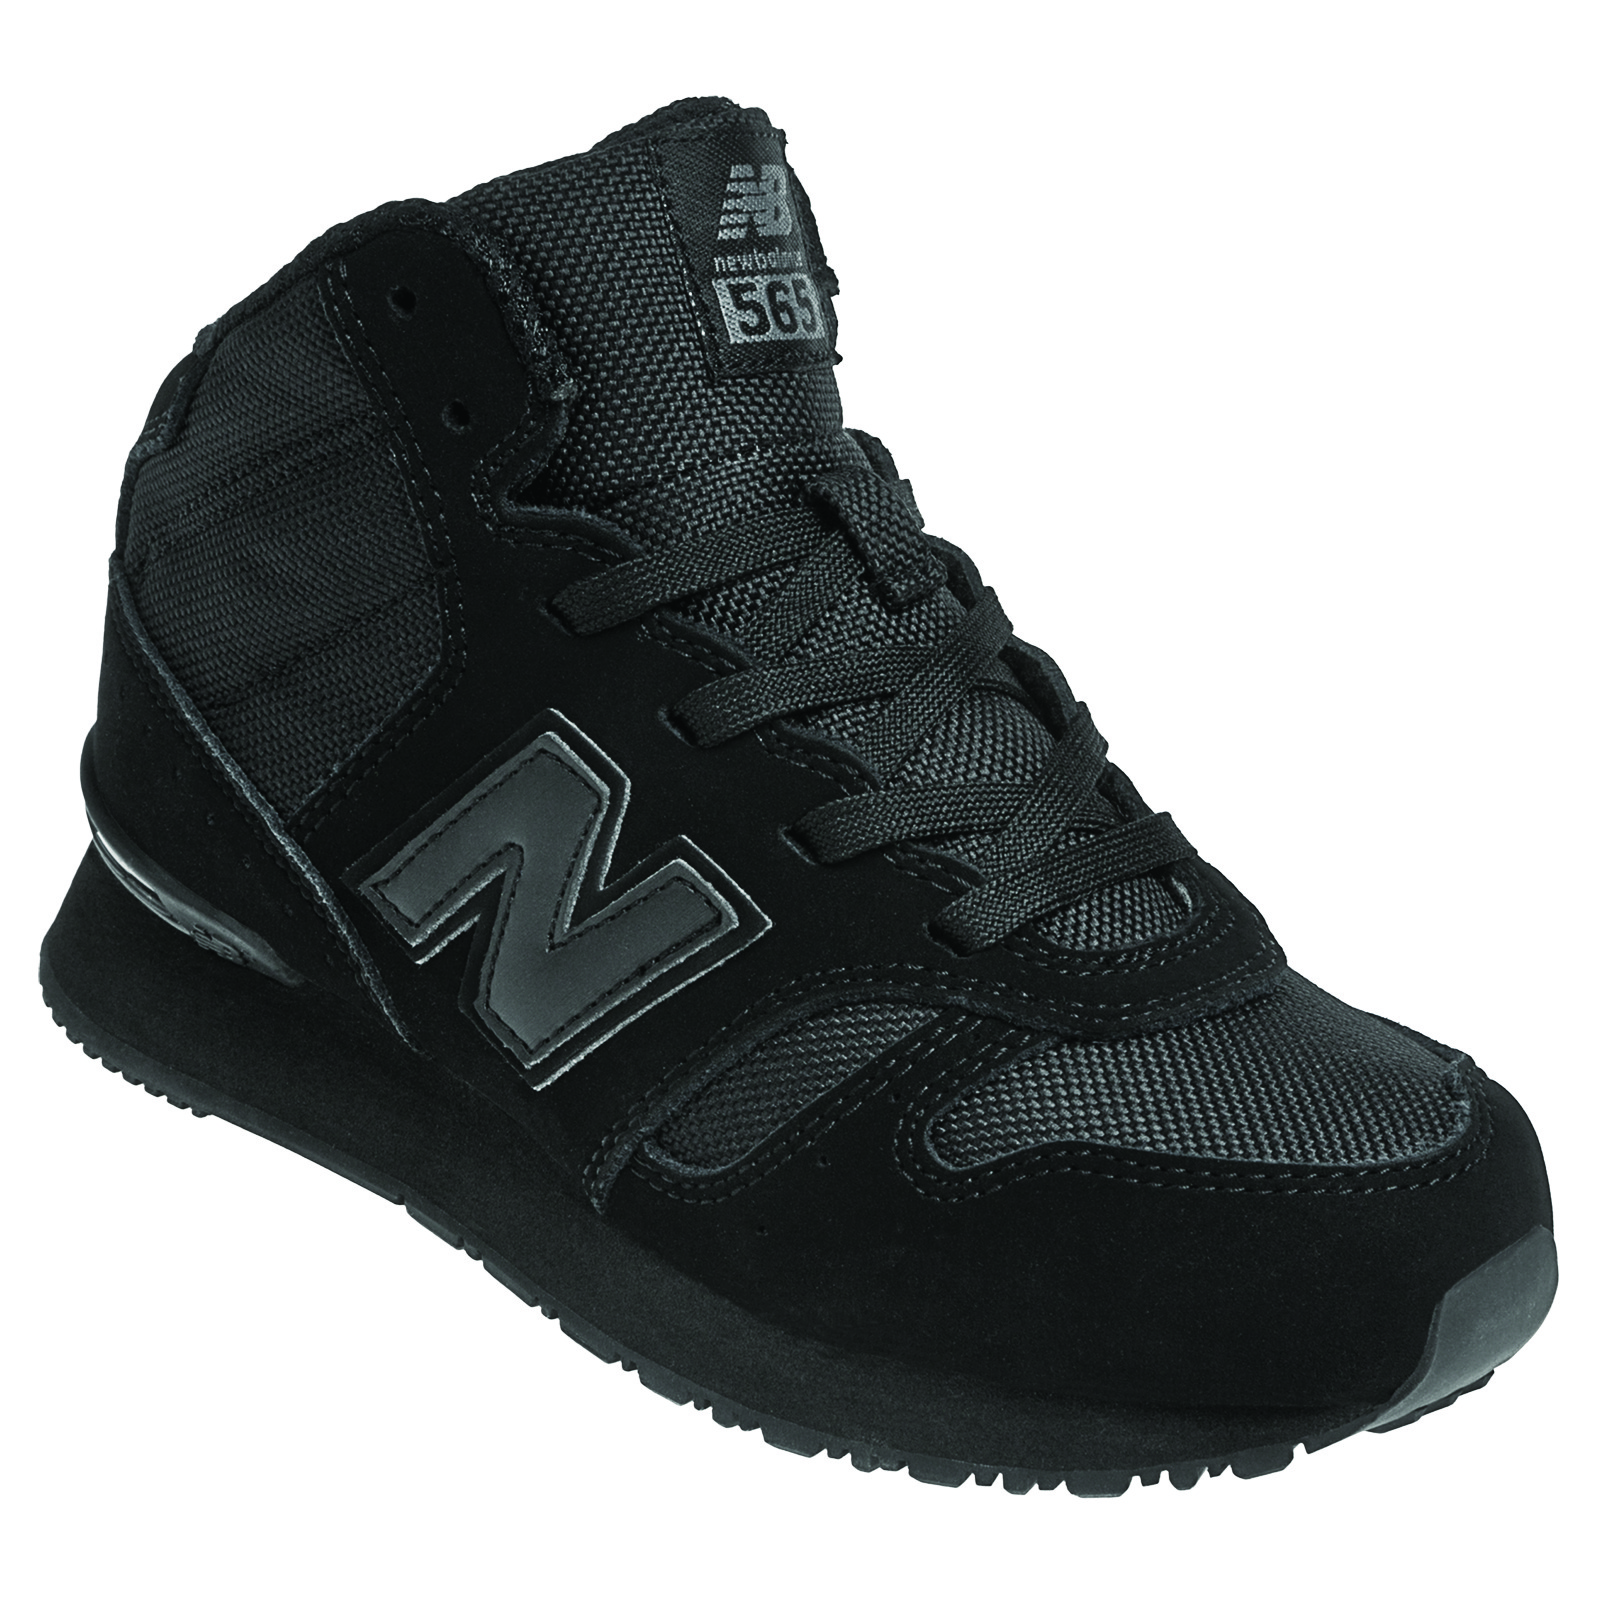 New Balance Boy's Sneaker 565 Wide Width - Black